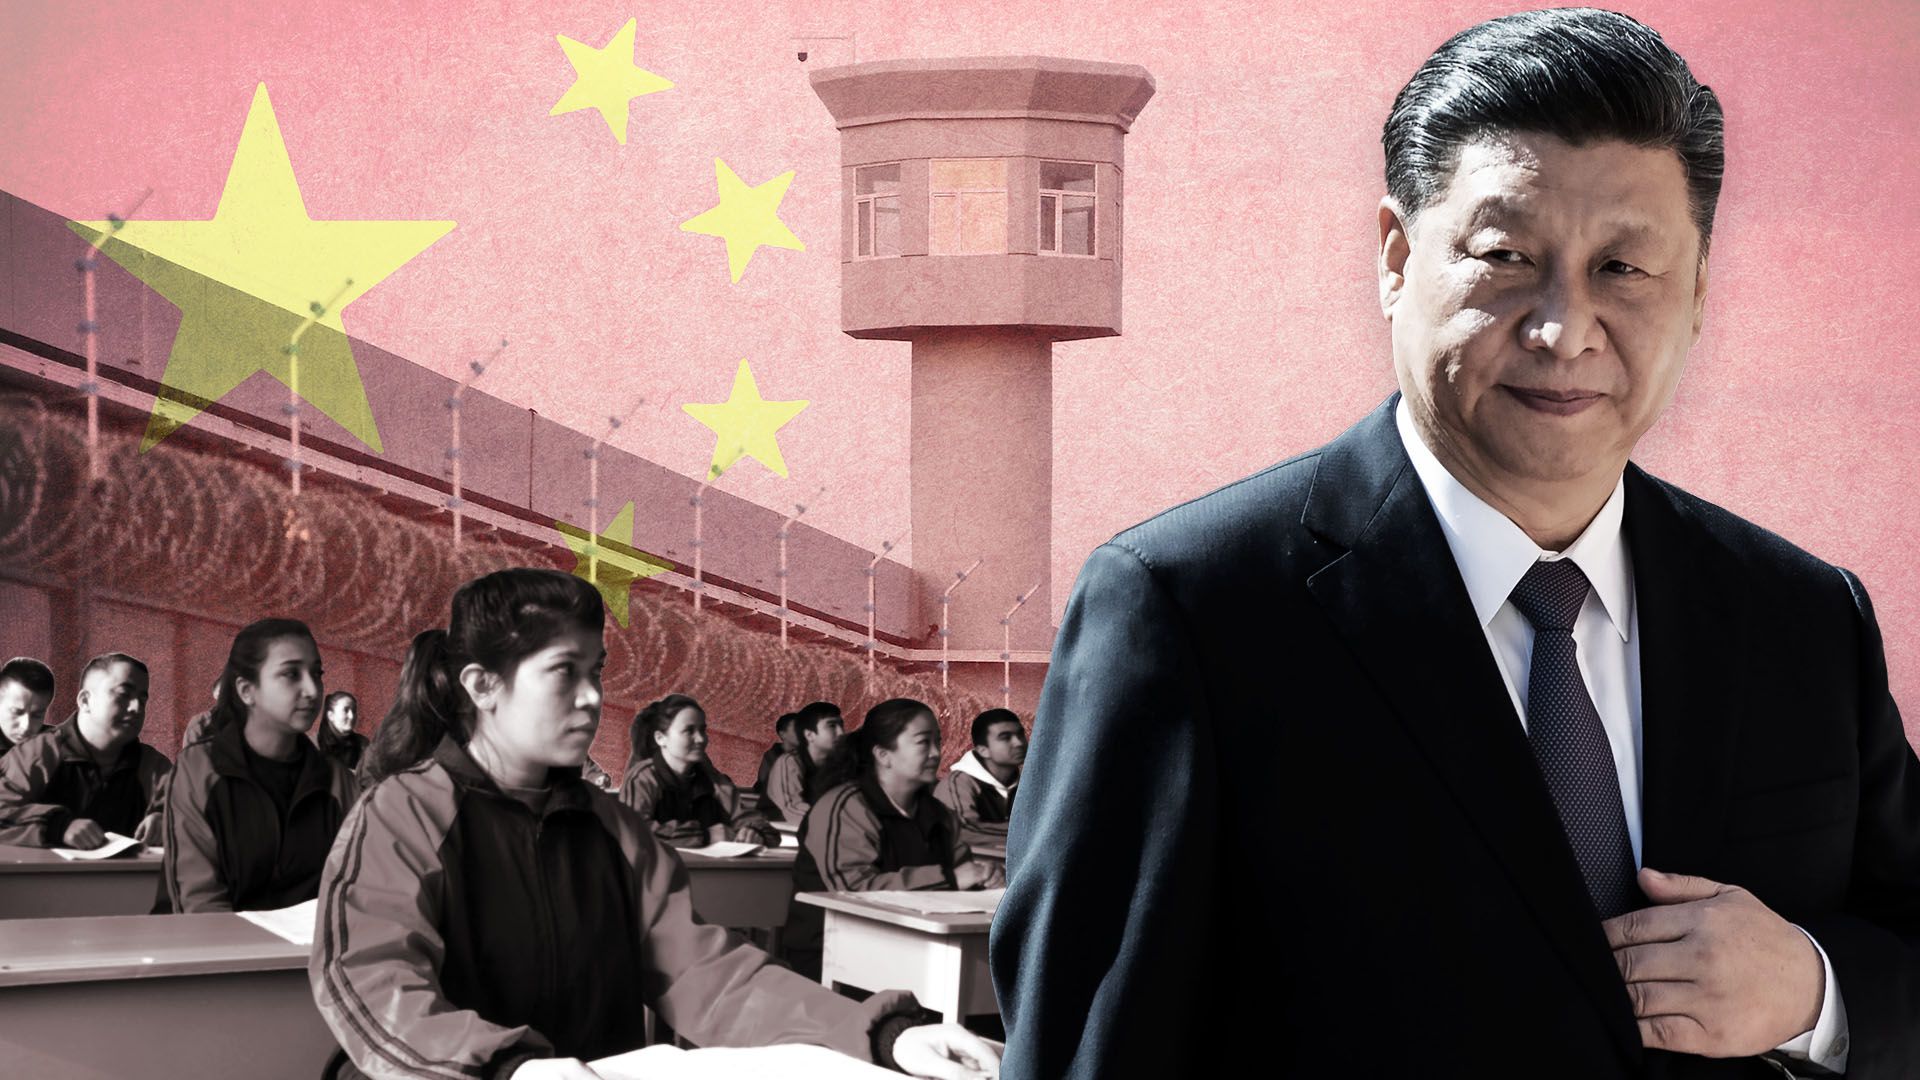 El presidente Xi Jinping creó y mantiene los campamentos de tortura y "reeducación" para adaptar a la cultura china a millones de musulmanes que viven en el noroeste del país.